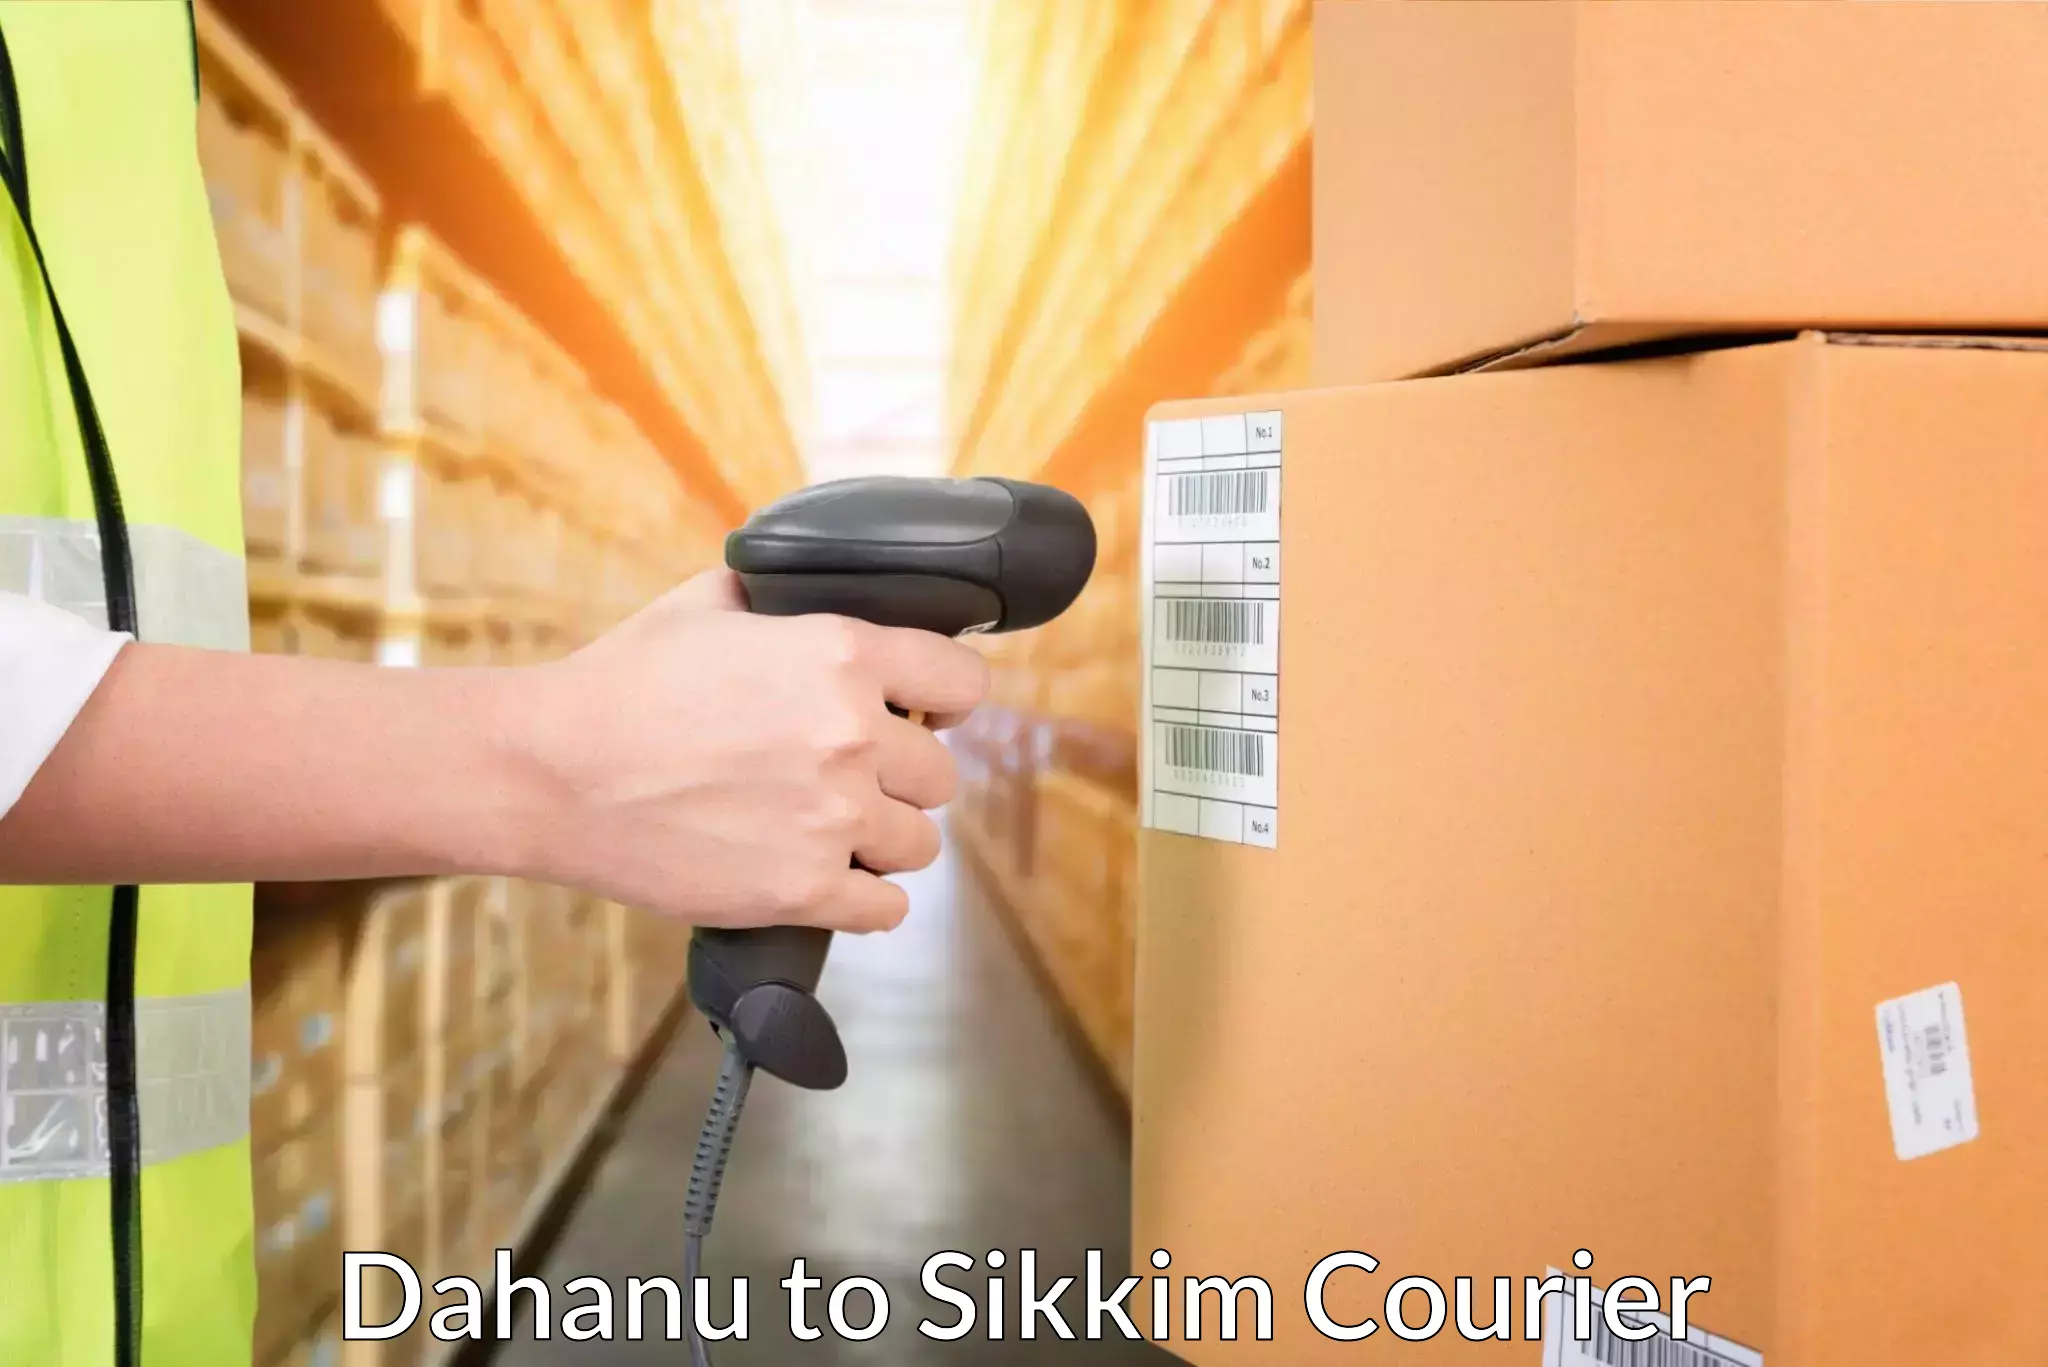 Efficient parcel service Dahanu to East Sikkim